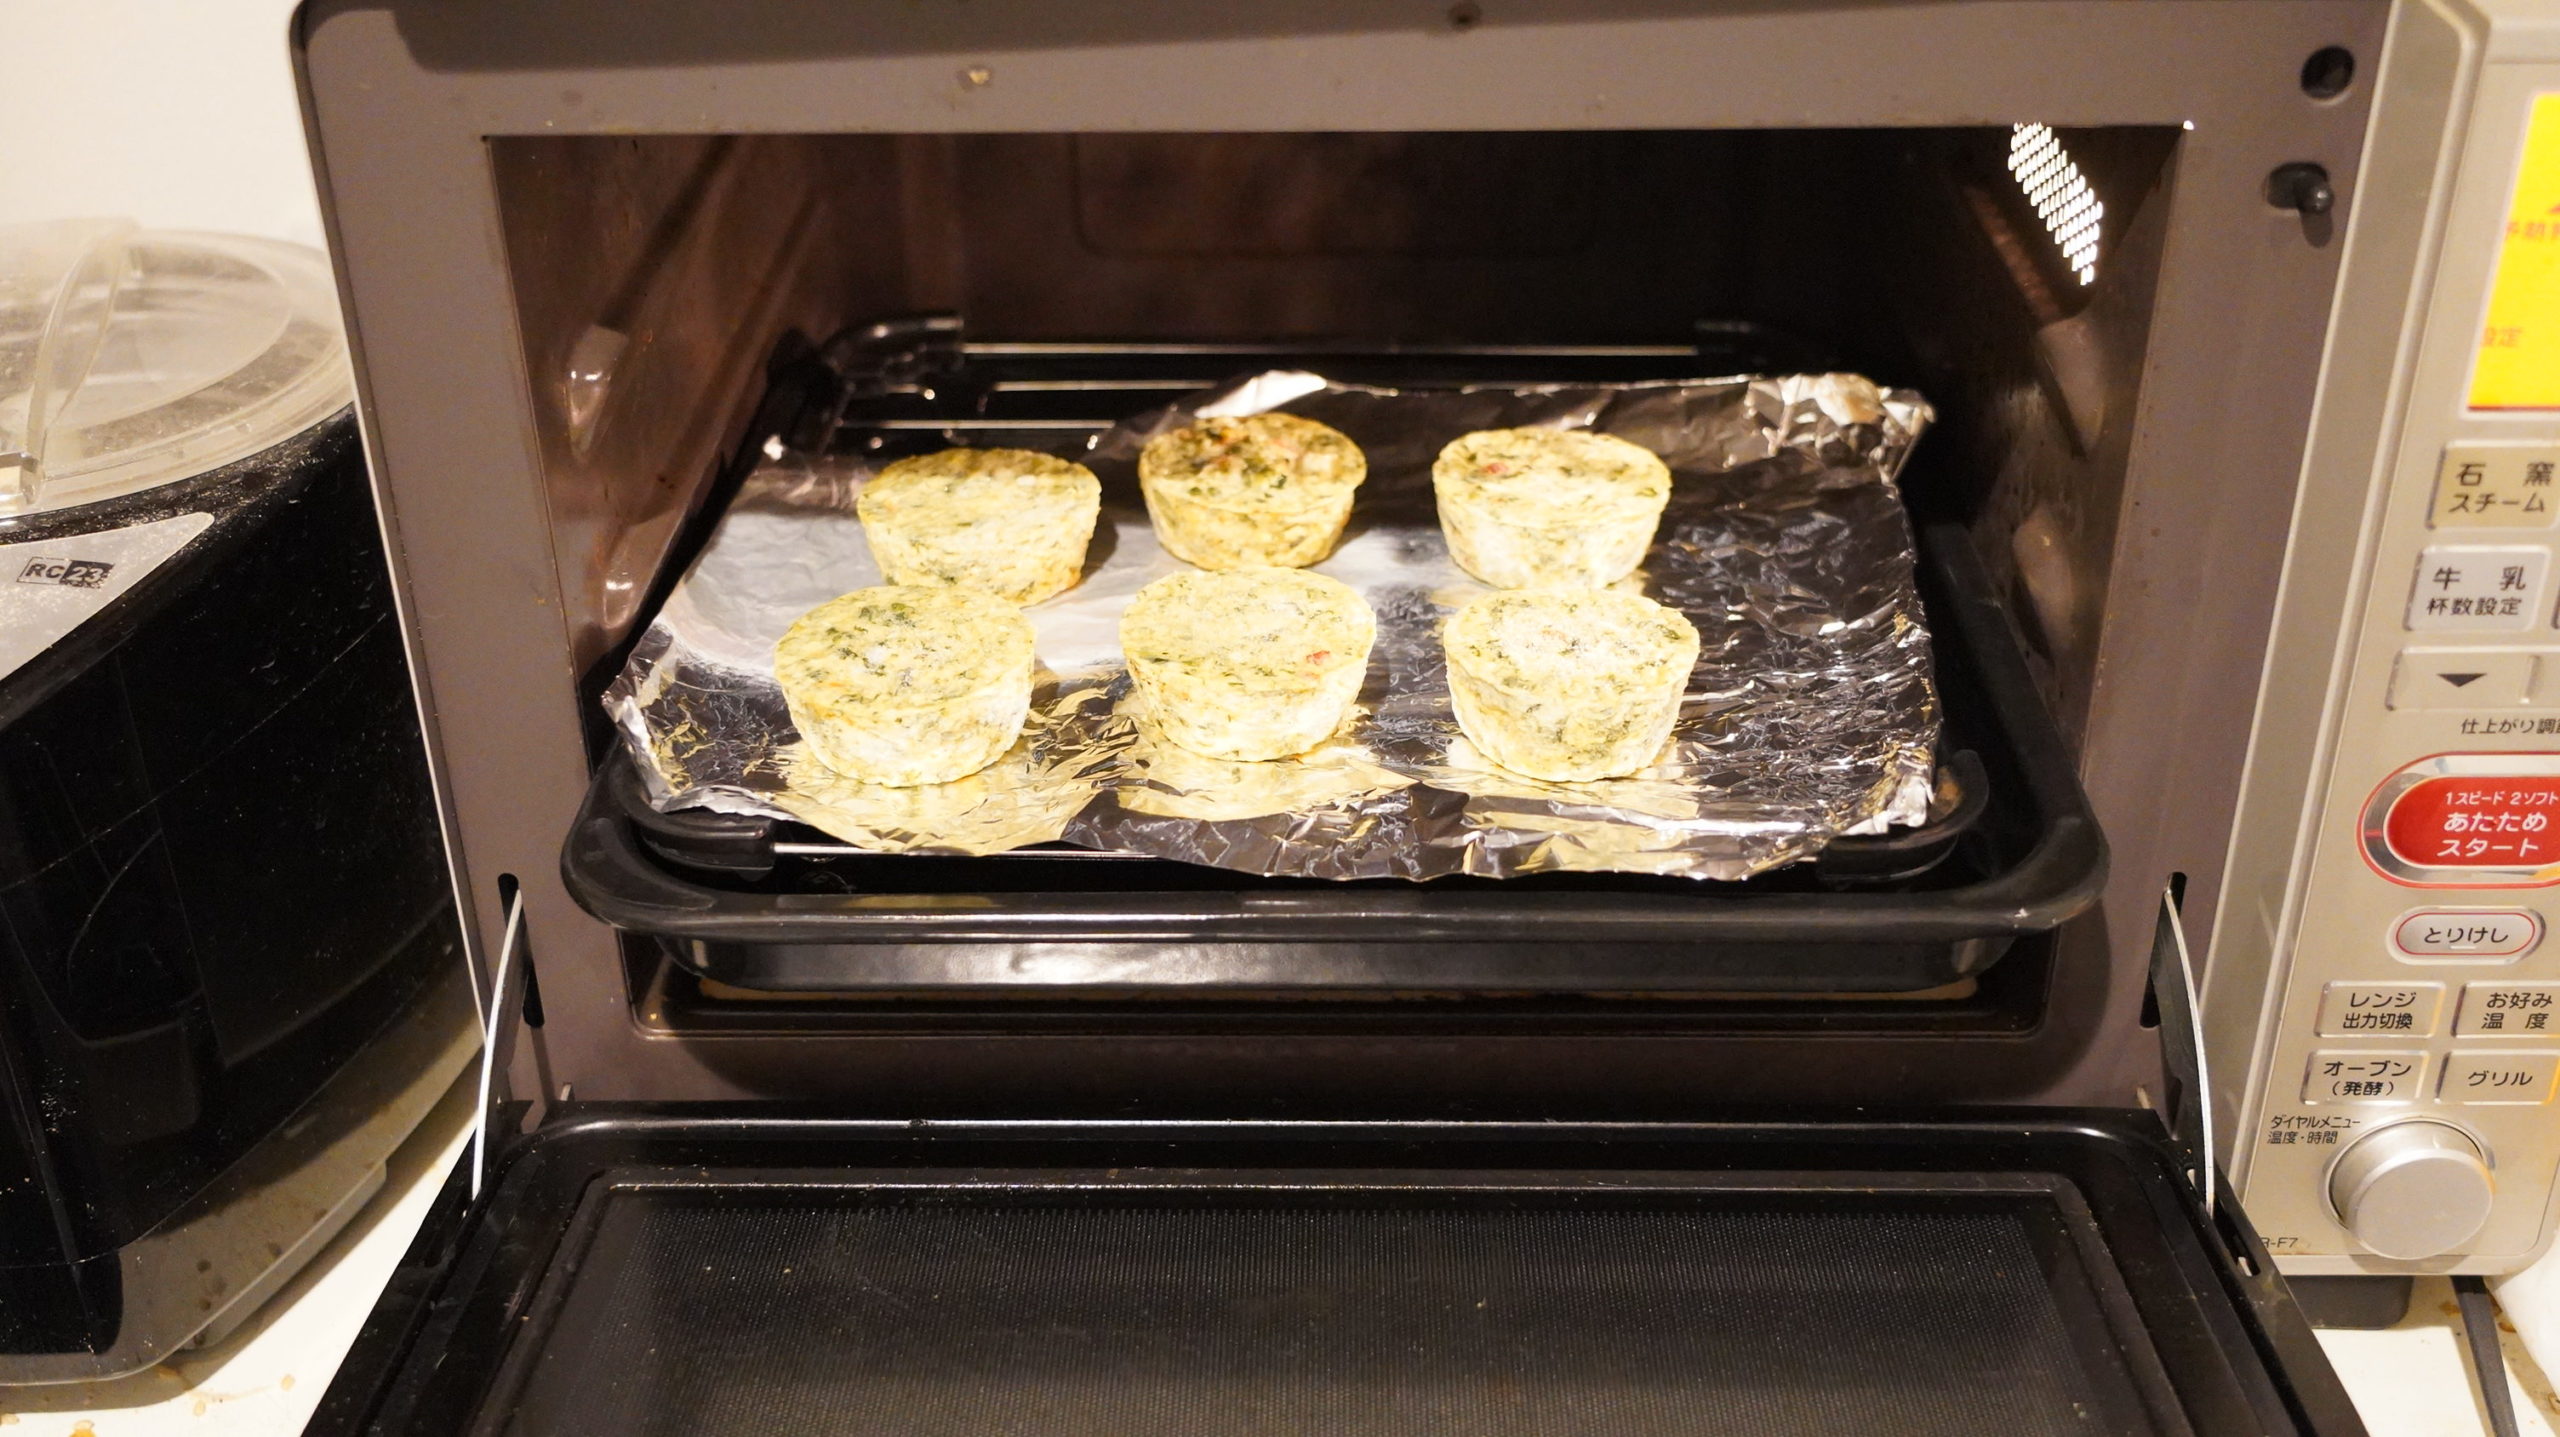 コストコの冷凍食品「ほうれん草のフリッタータ」をオーブンで調理している写真